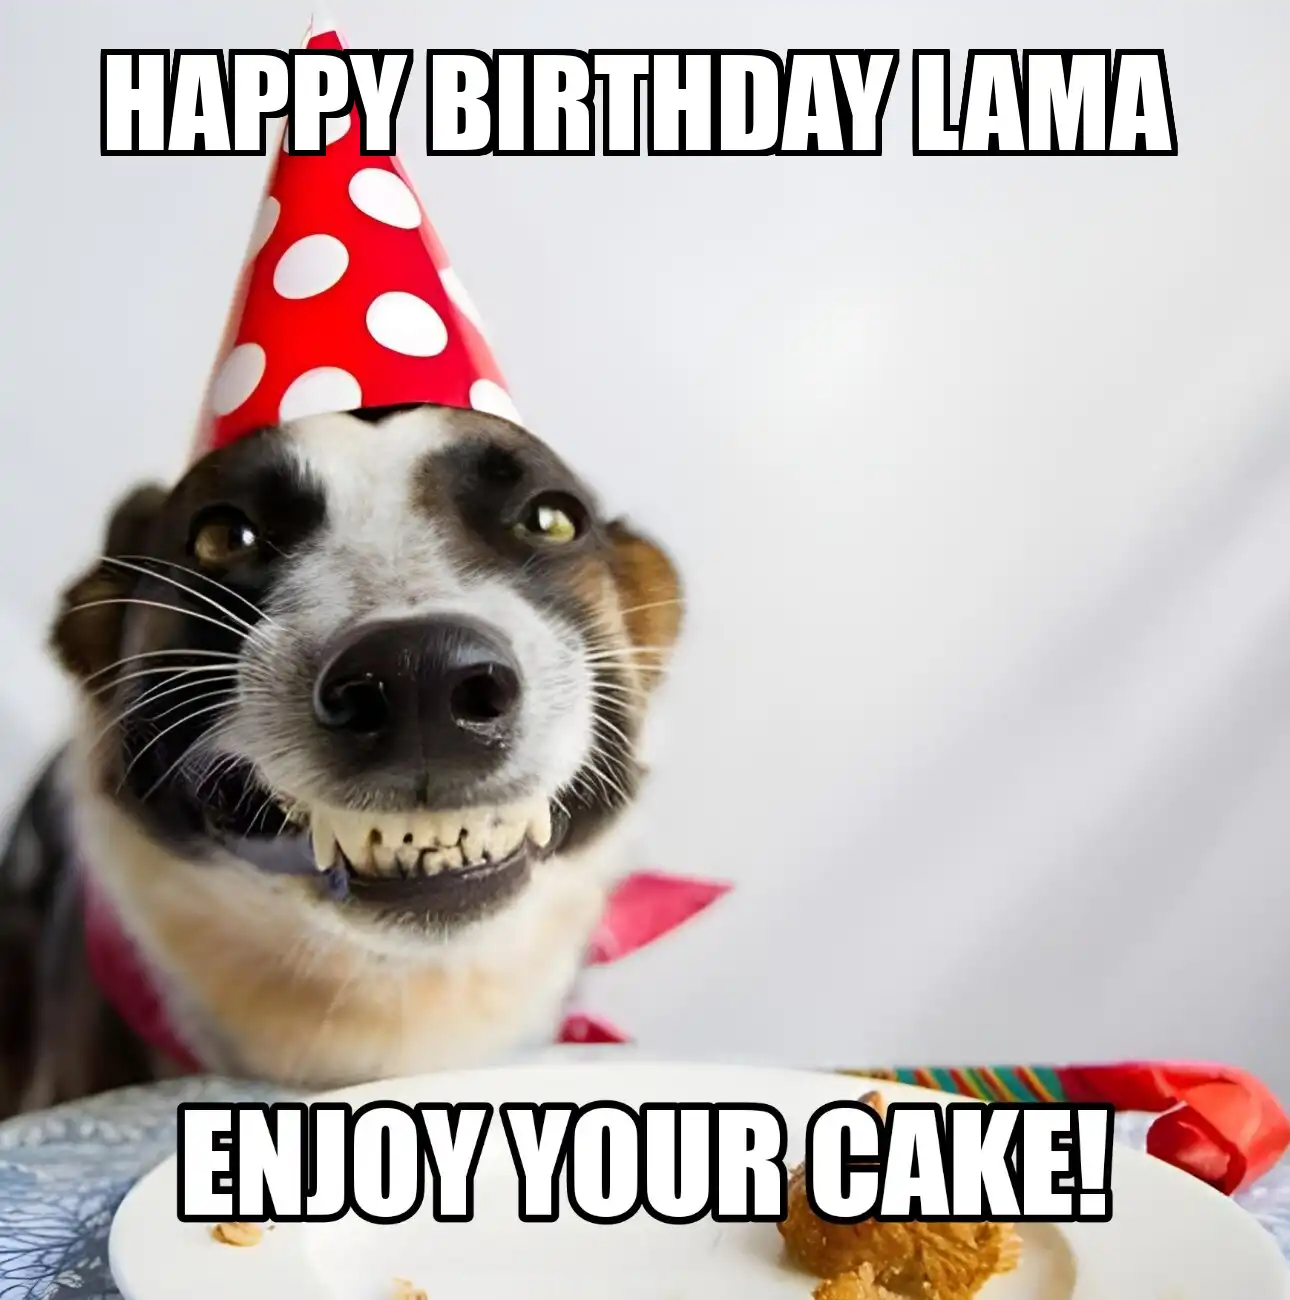 Happy Birthday Lama Enjoy Your Cake Dog Meme